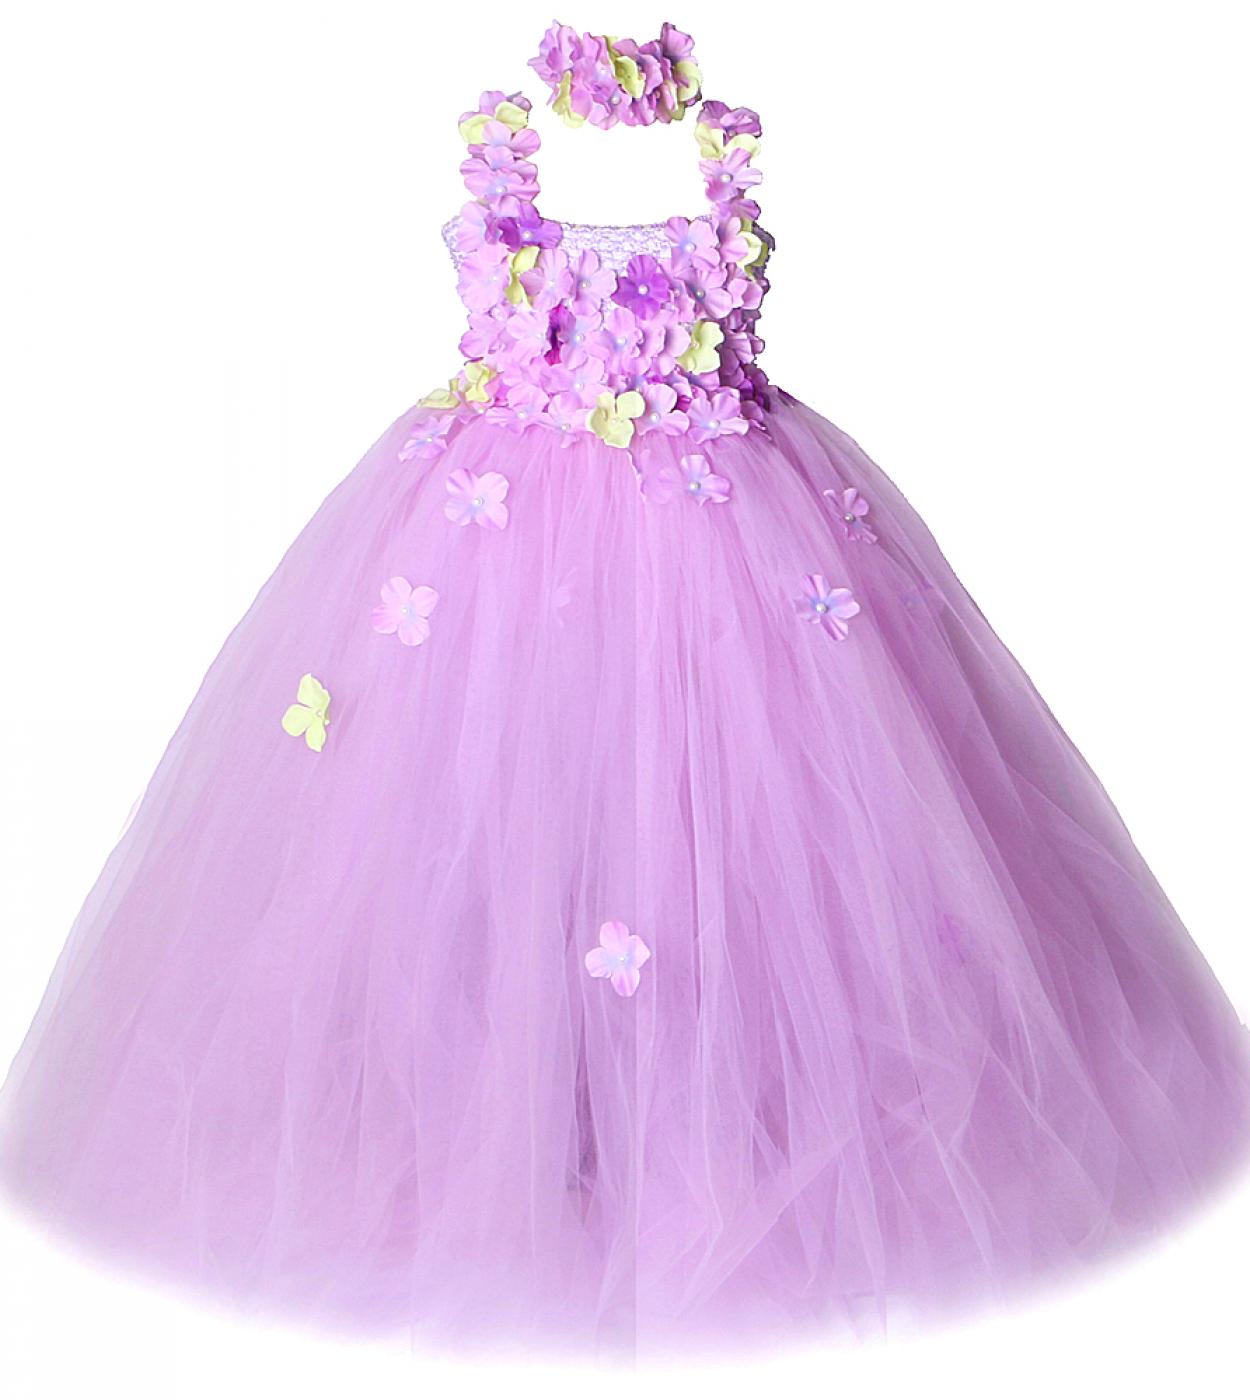 ילדת פרחים שמלה ארוכה ליום הולדת חתונה שמלות פיות לילדים תחפושות טוטו נסיכה בנות שושבינה שמלת נשף מלאה